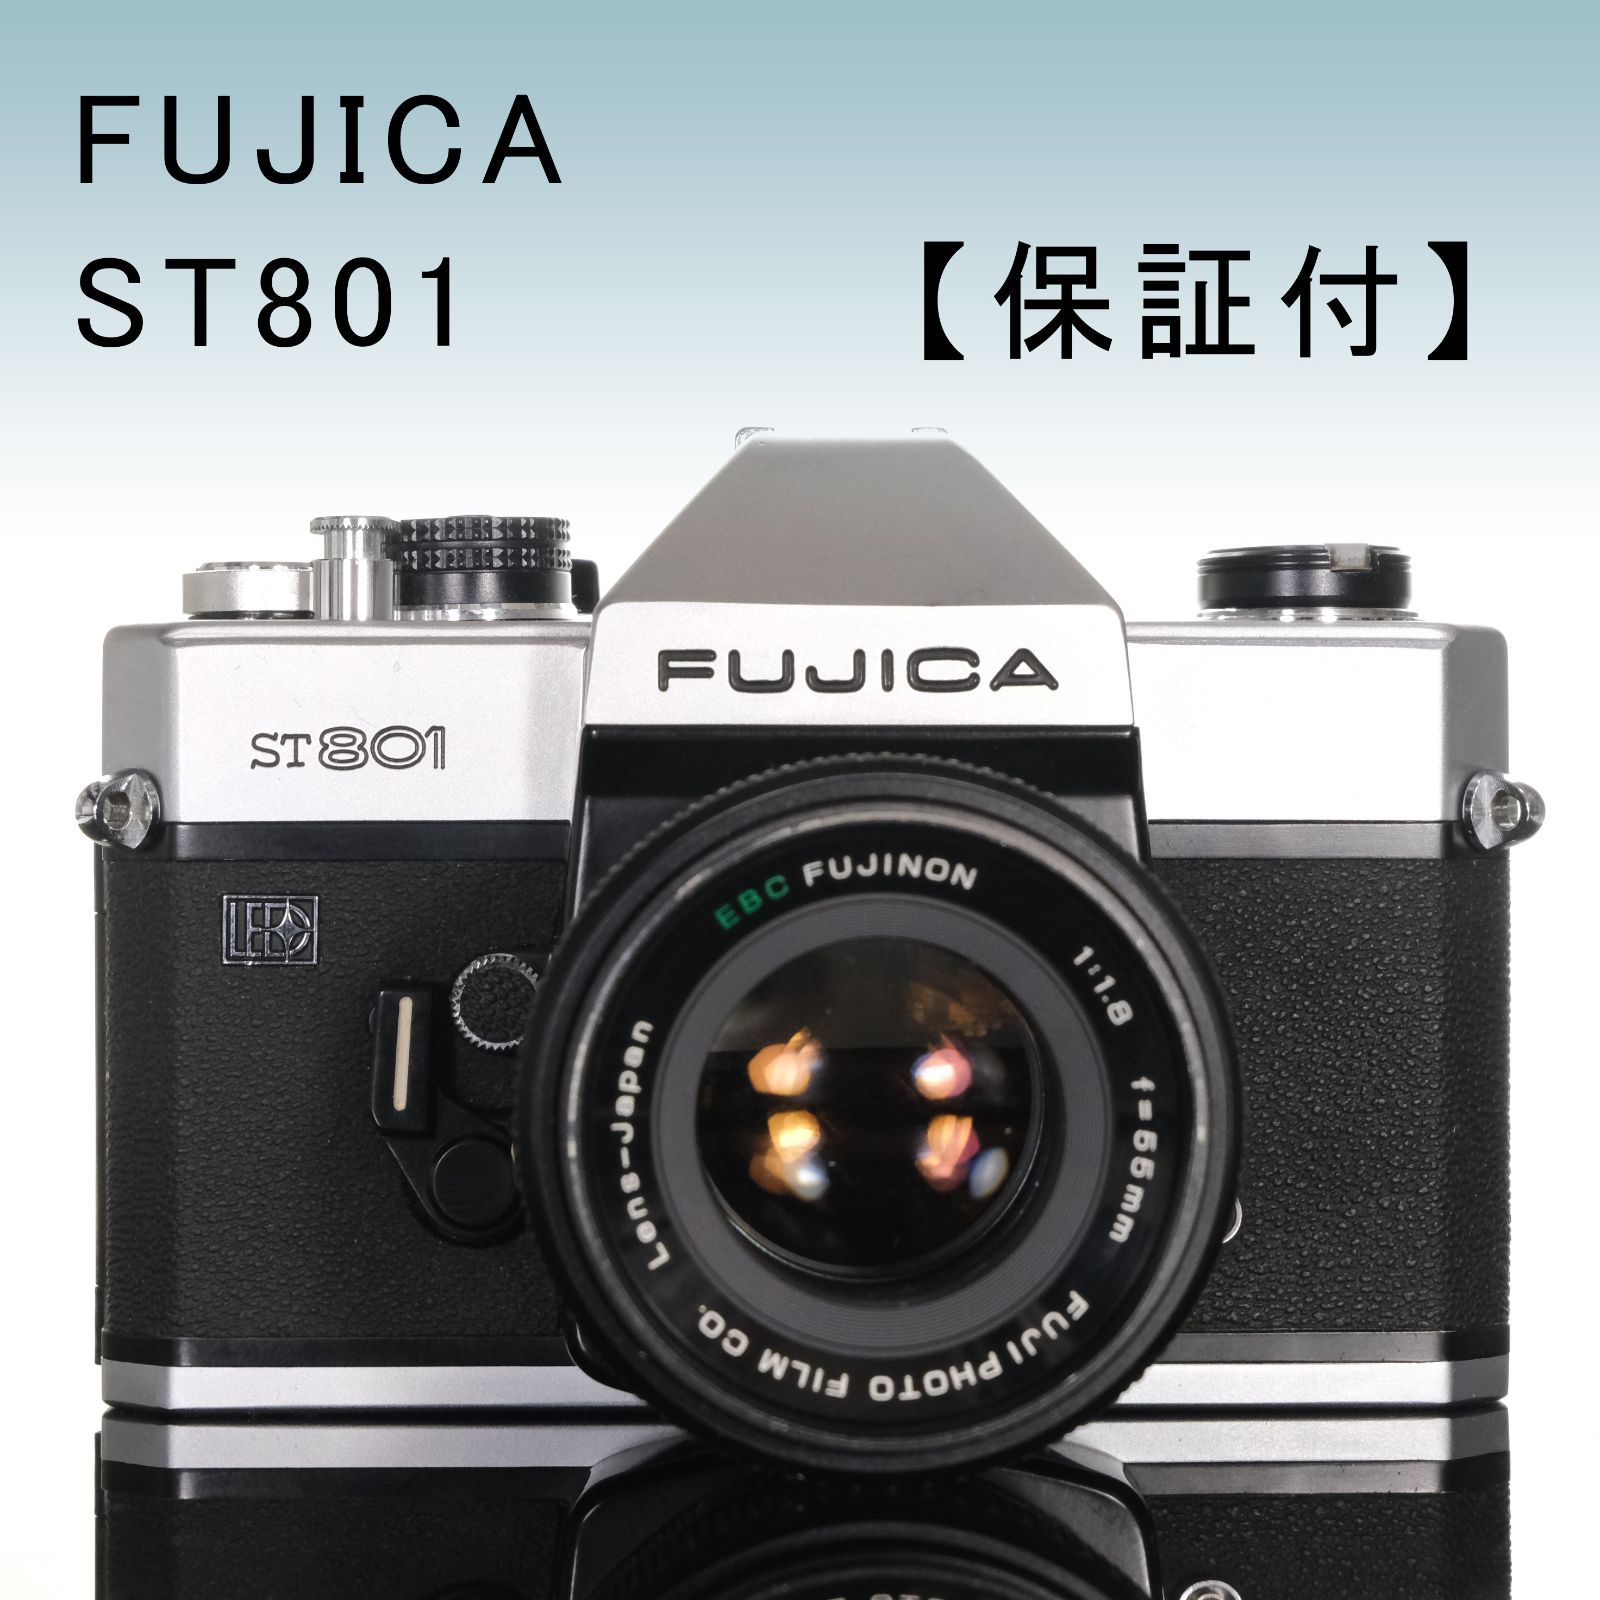 ☆一眼レフ・フィルムカメラ☆フジカ FUJICA ST801☆FUJINON 1:1.4 f 